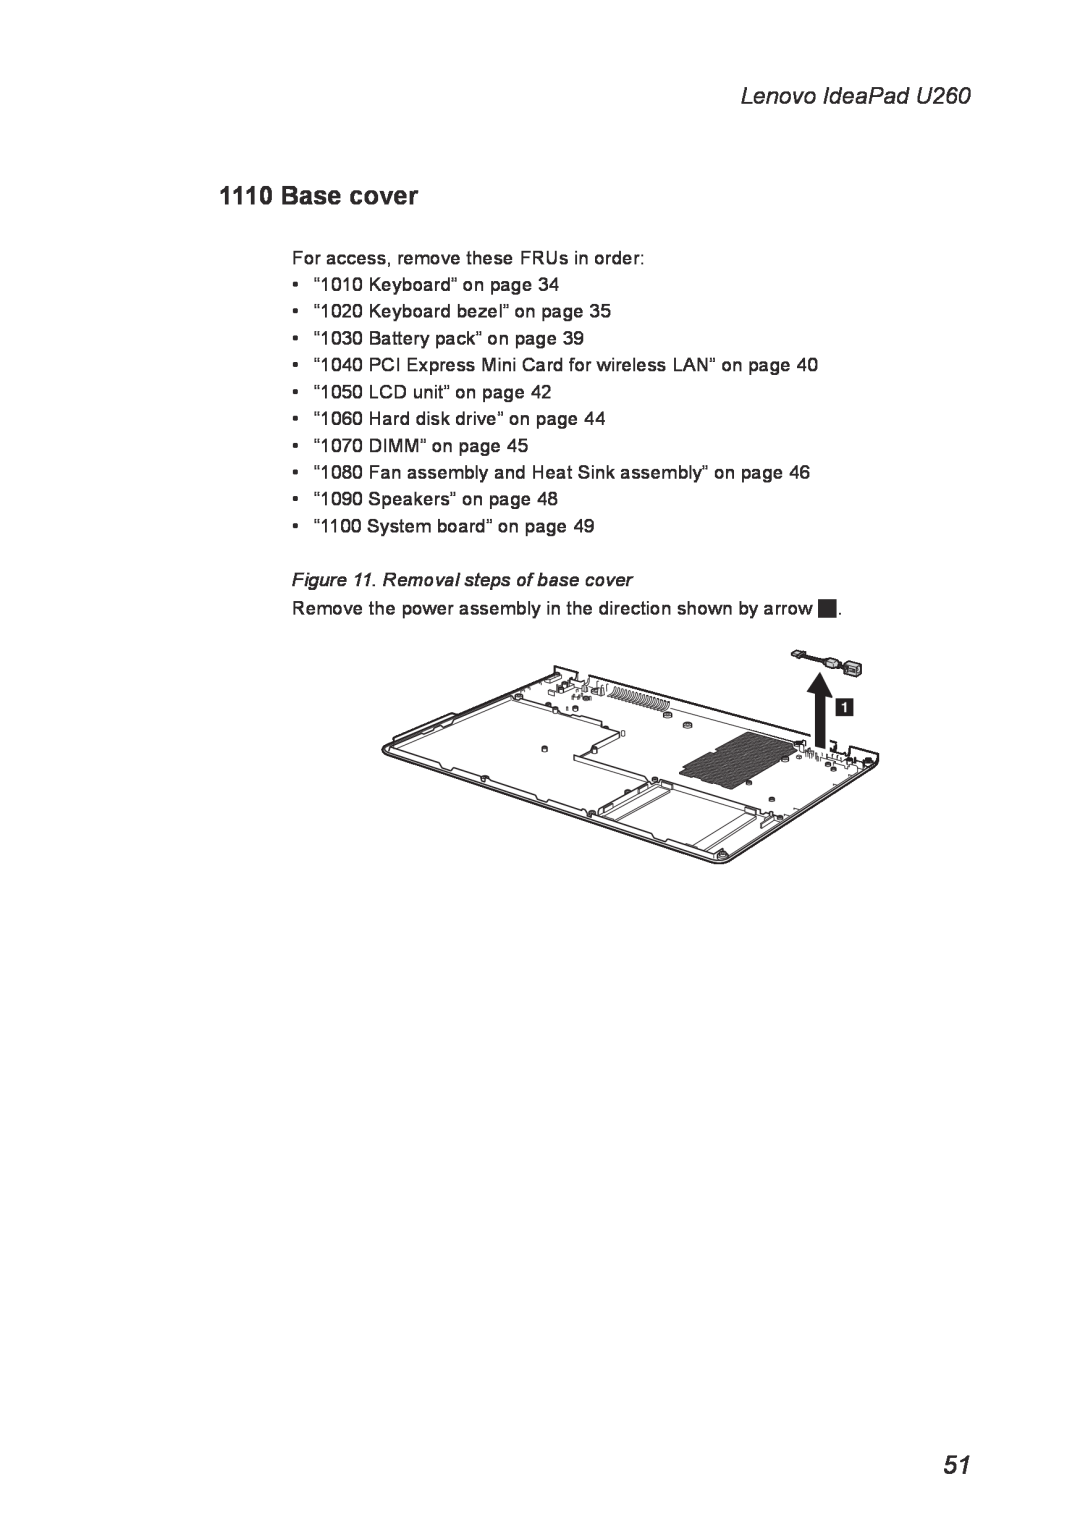 Lenovo manual Removal steps of base cover, Lenovo IdeaPad U260 